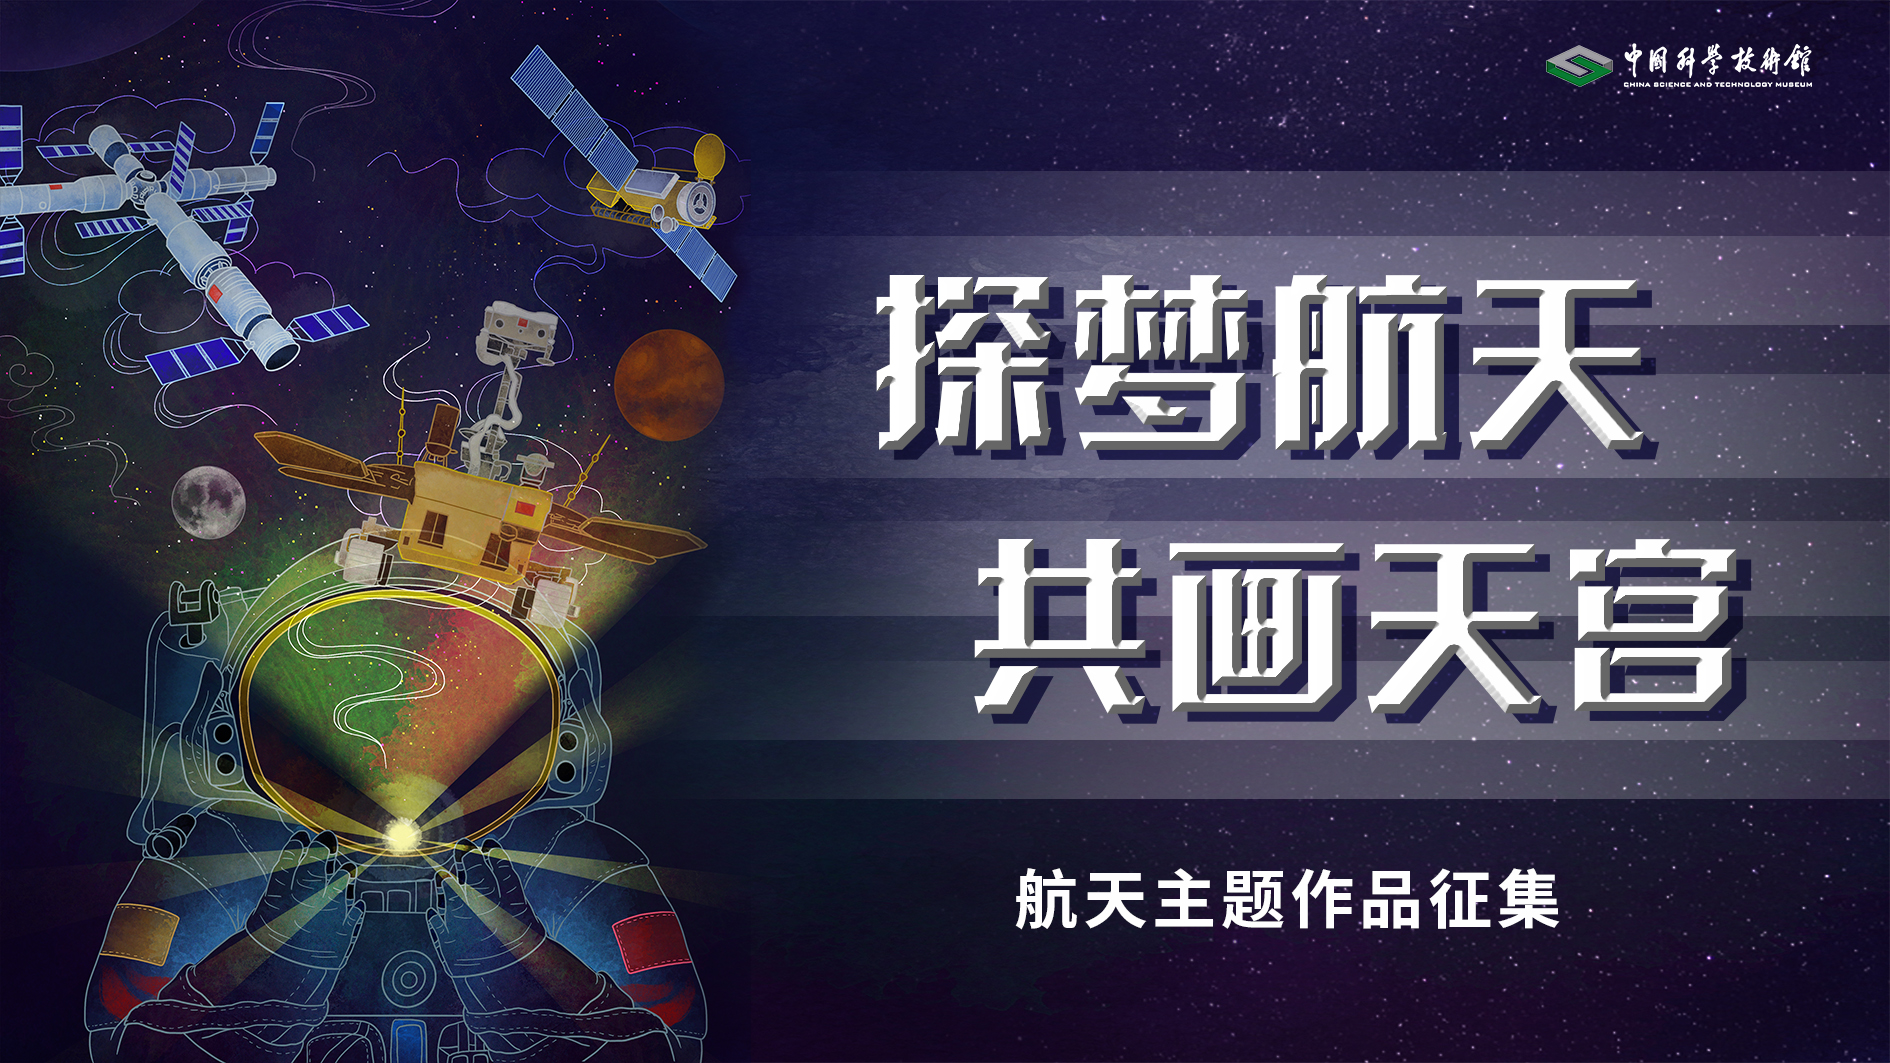 中国航天日,“航天点亮梦想”主题月活动,中国航天知识